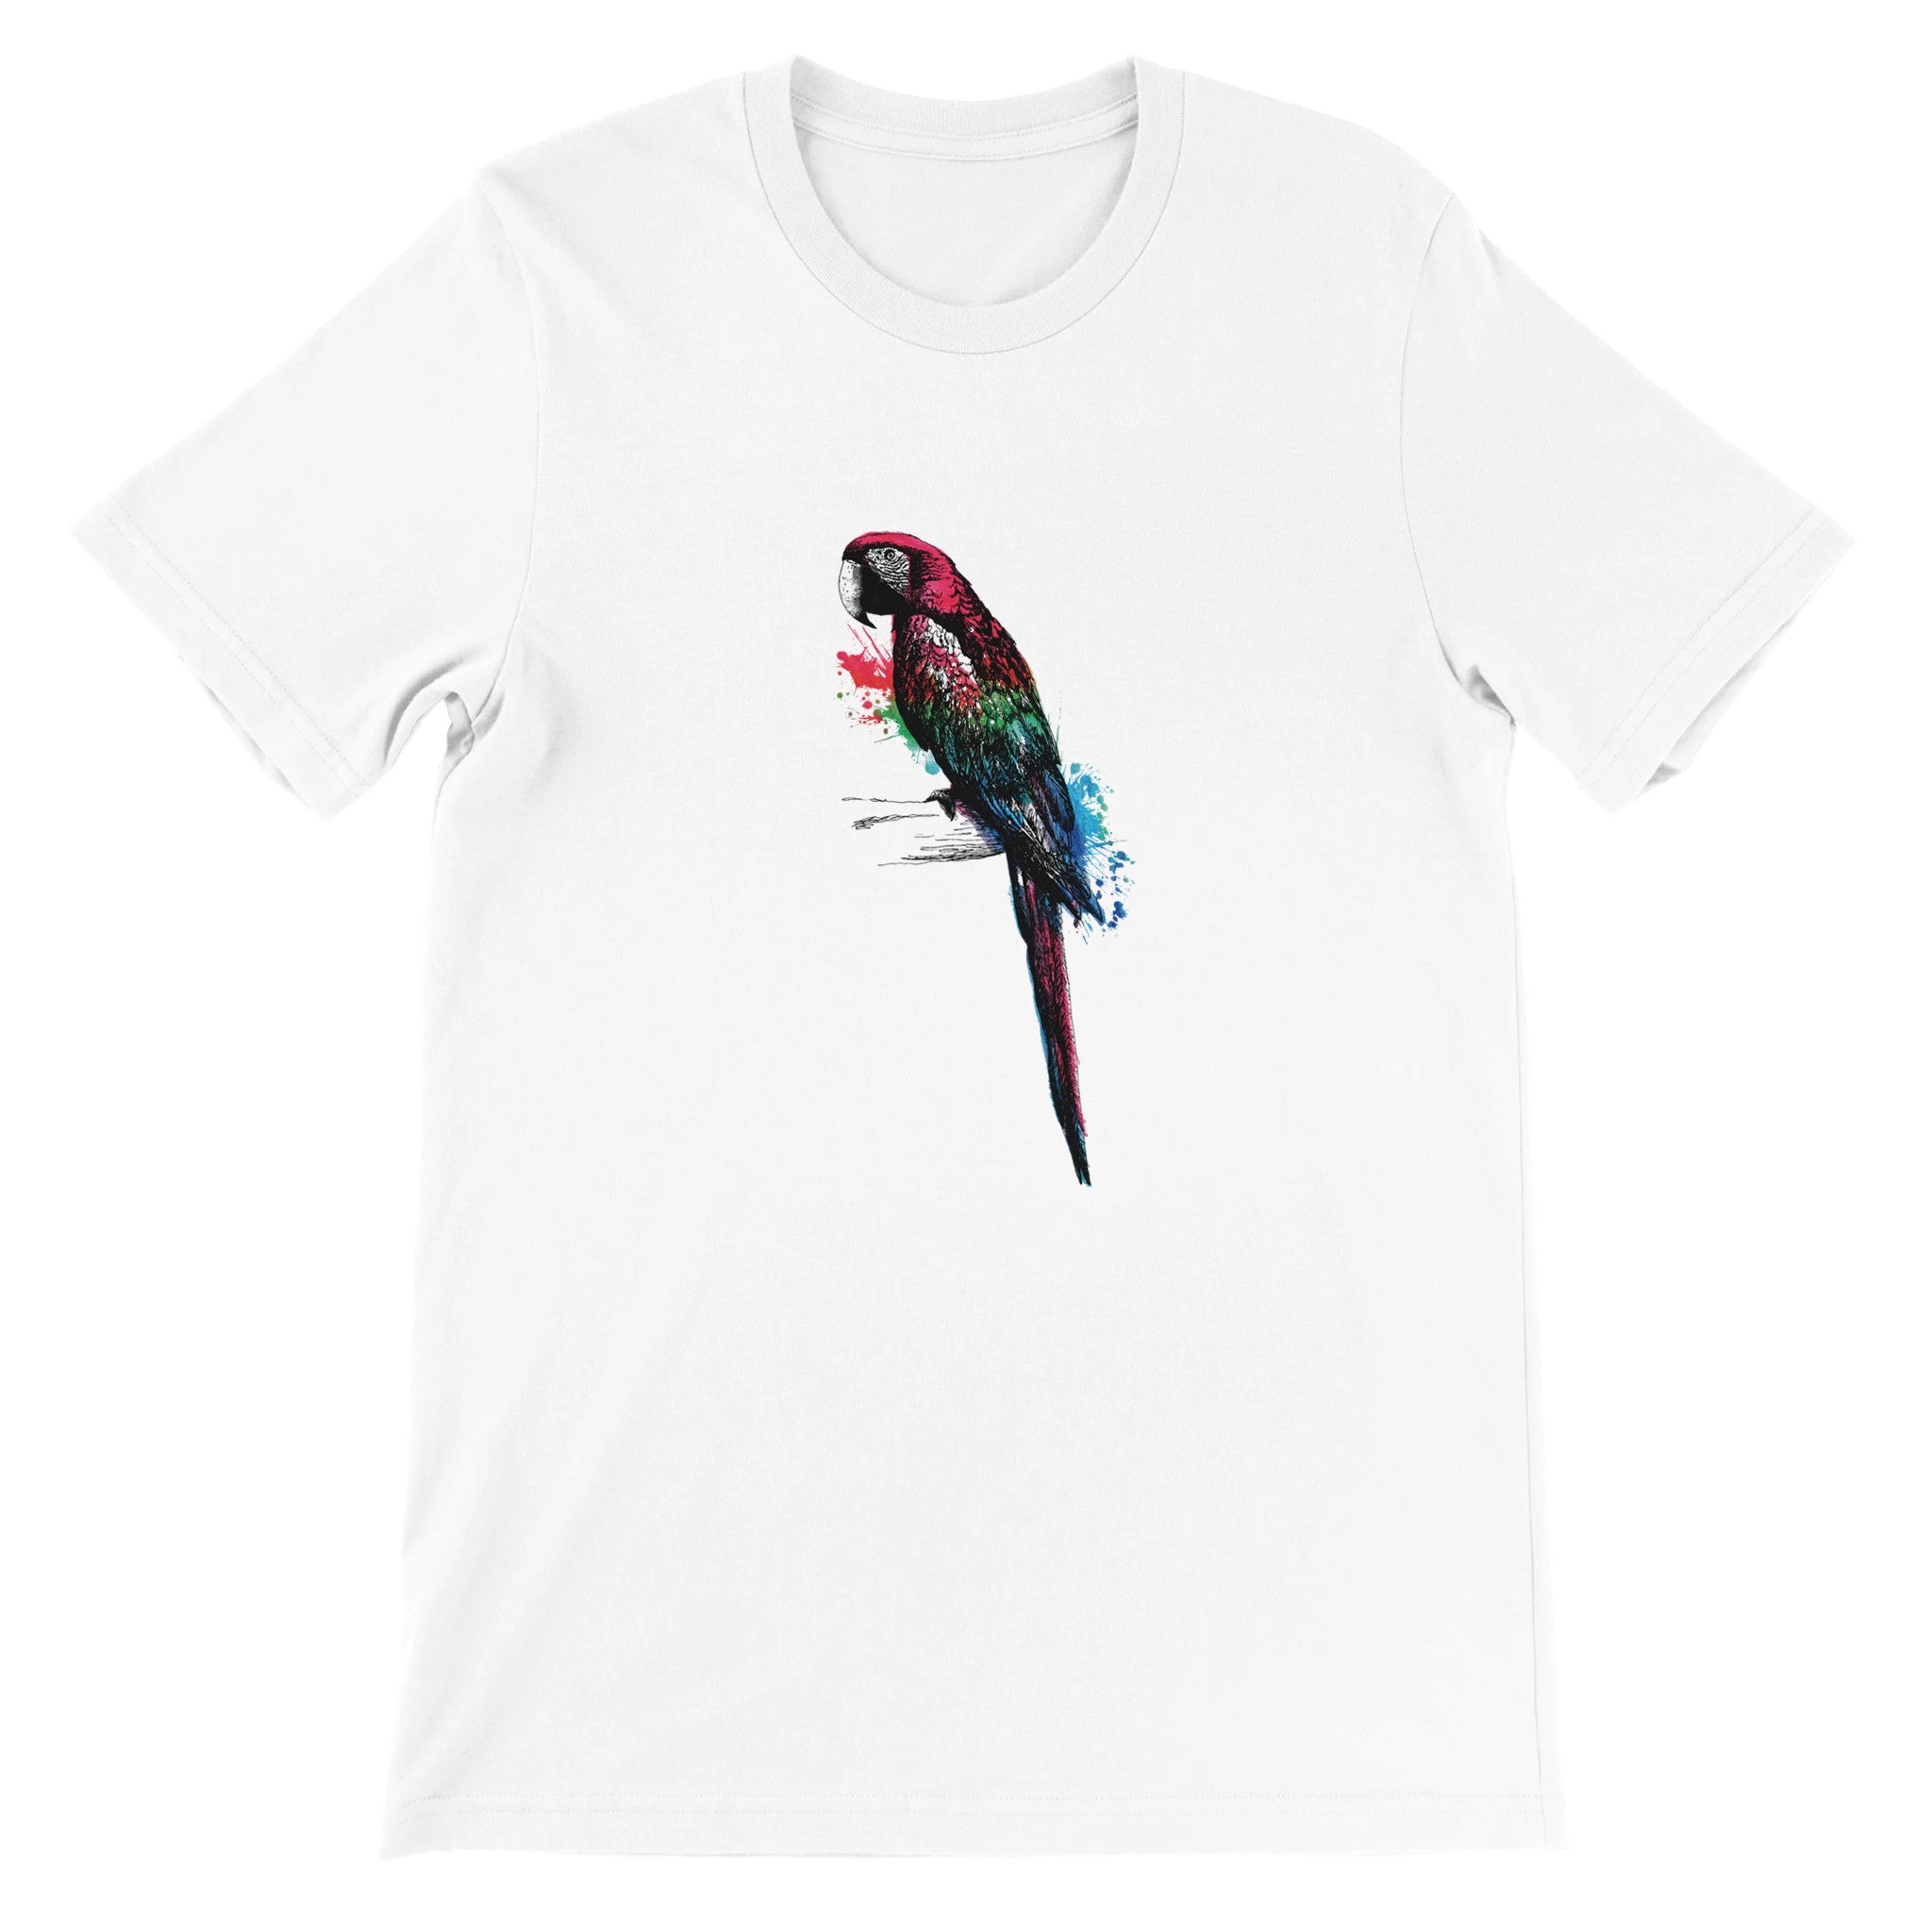 Parrot Illustration Crewneck T-shirt - Optimalprint